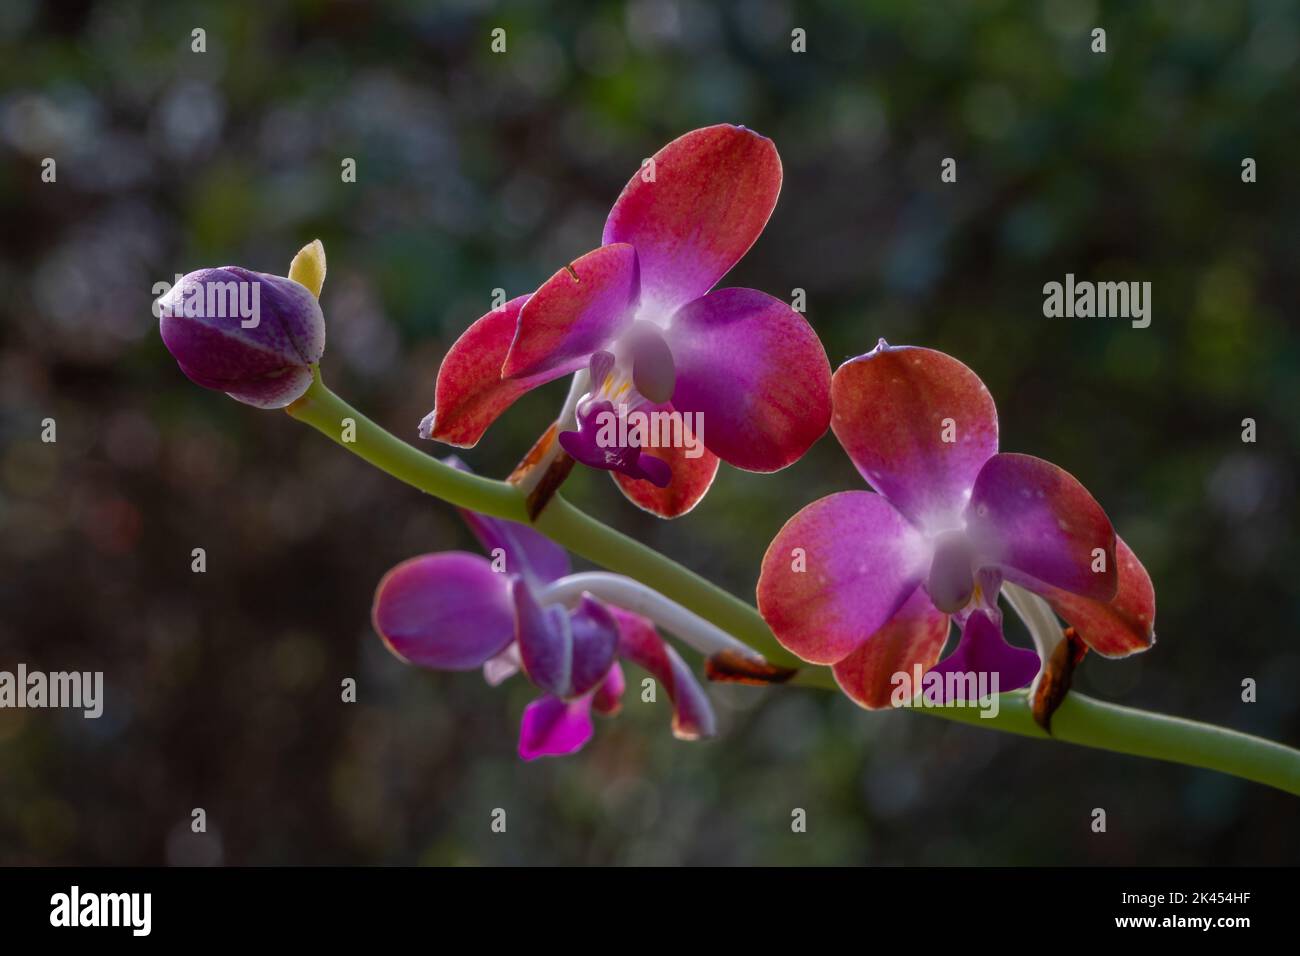 Gros plan contre-jour de l'espèce d'orchidée épiphytique tropicale hygrochilus parishii var numottiana qui fleurit avec des fleurs violettes, blanches et orange Banque D'Images